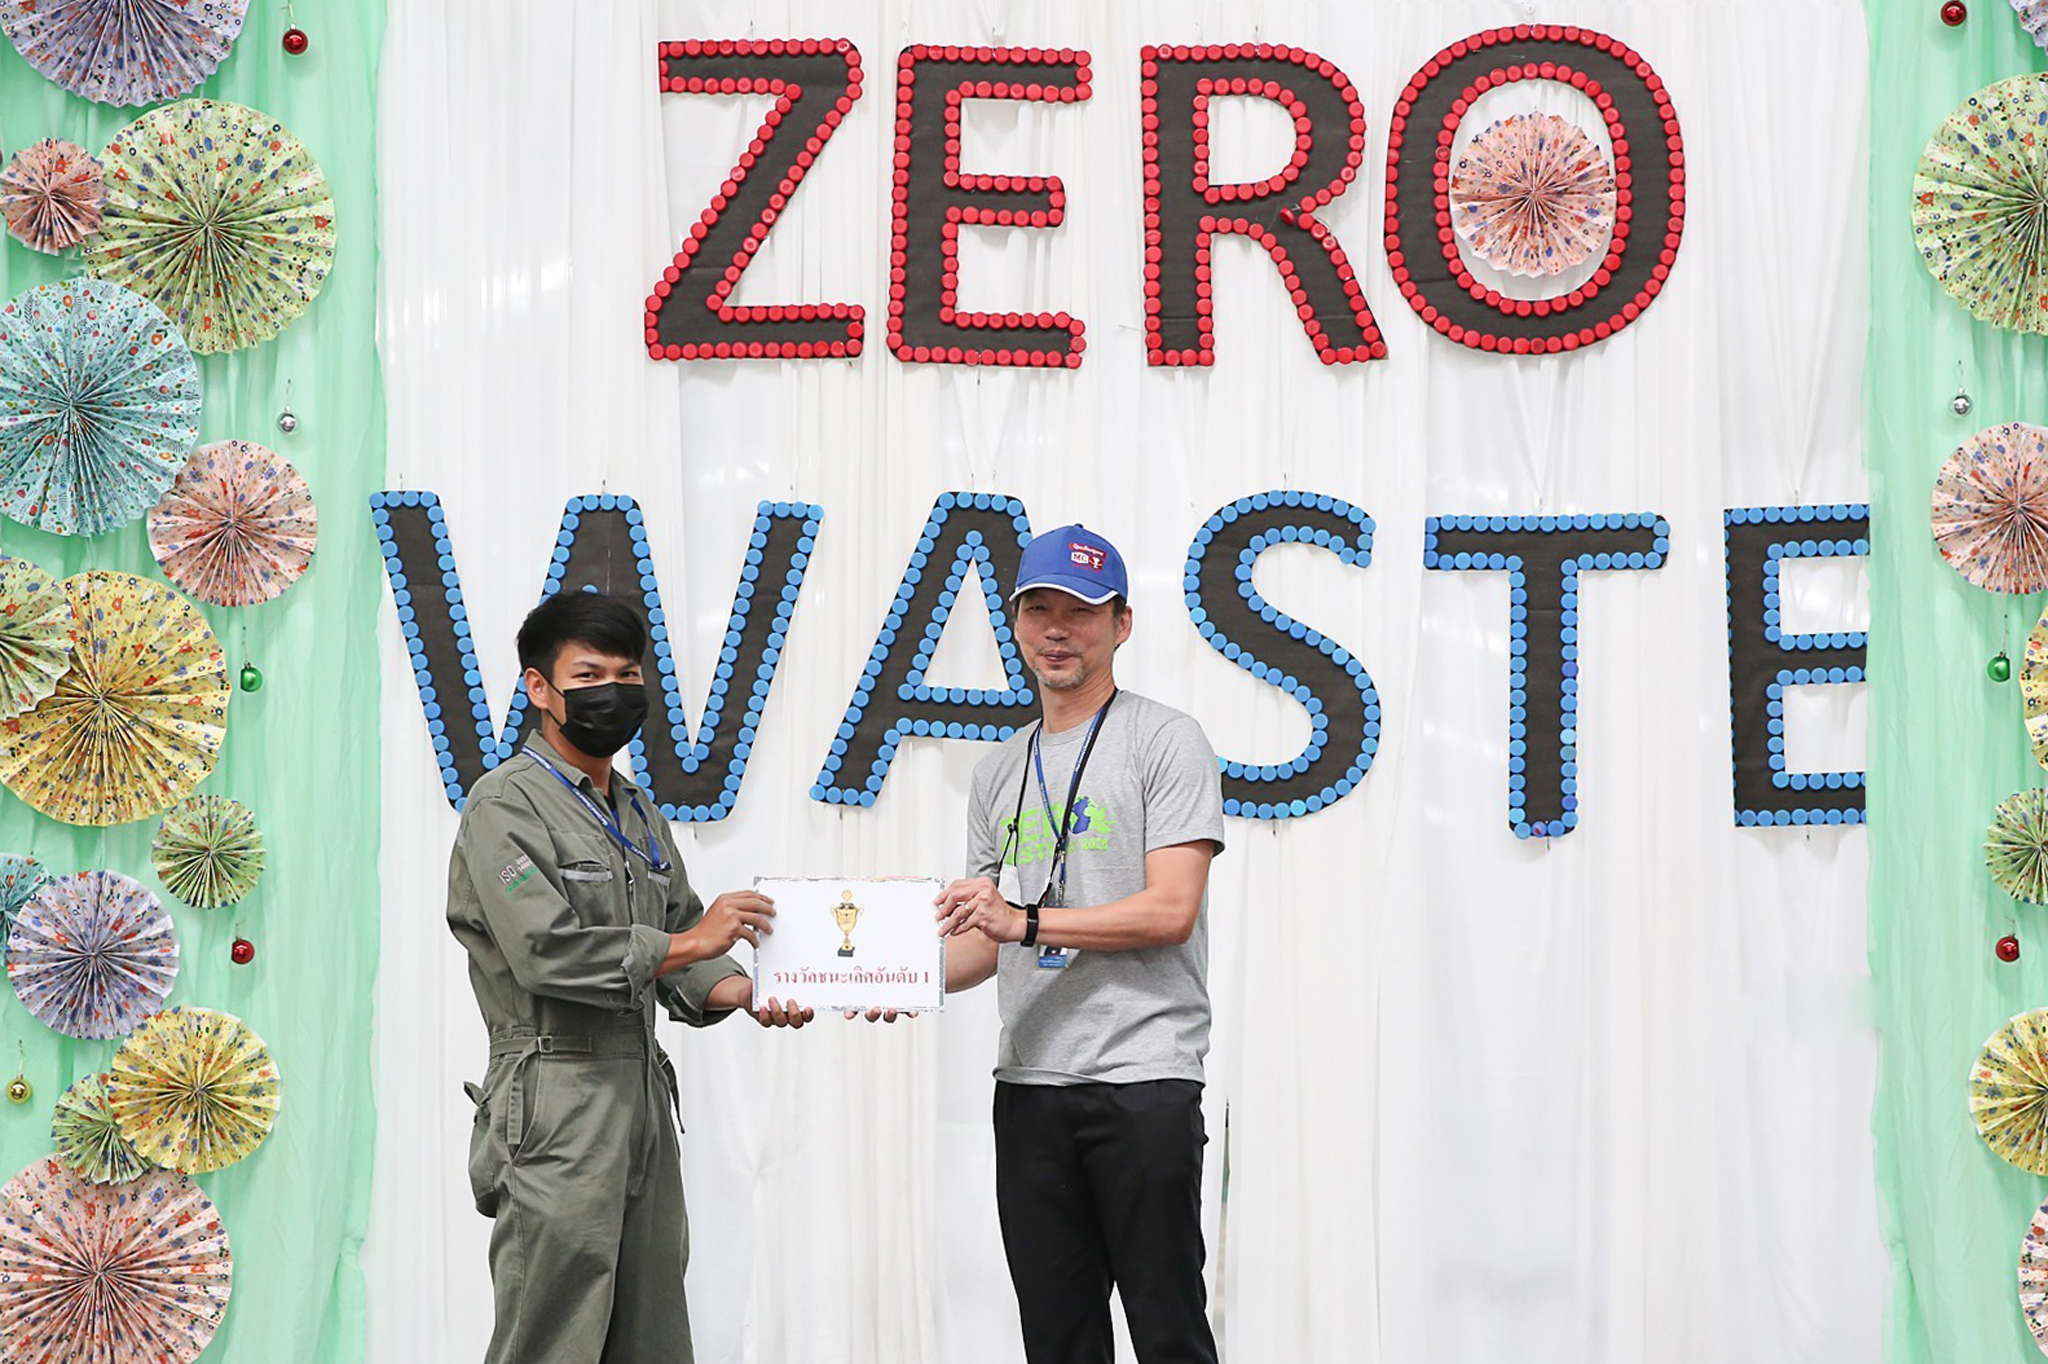 บริษัท ไทยเซ็นทรัลเคมี สนับสนุนกิจกรรมอนุรักษ์พลังงานและการใช้ทรัพยากร จัดงาน Zero Waste ณ โรงงานนครหลวง จังหวัดอยุธยา